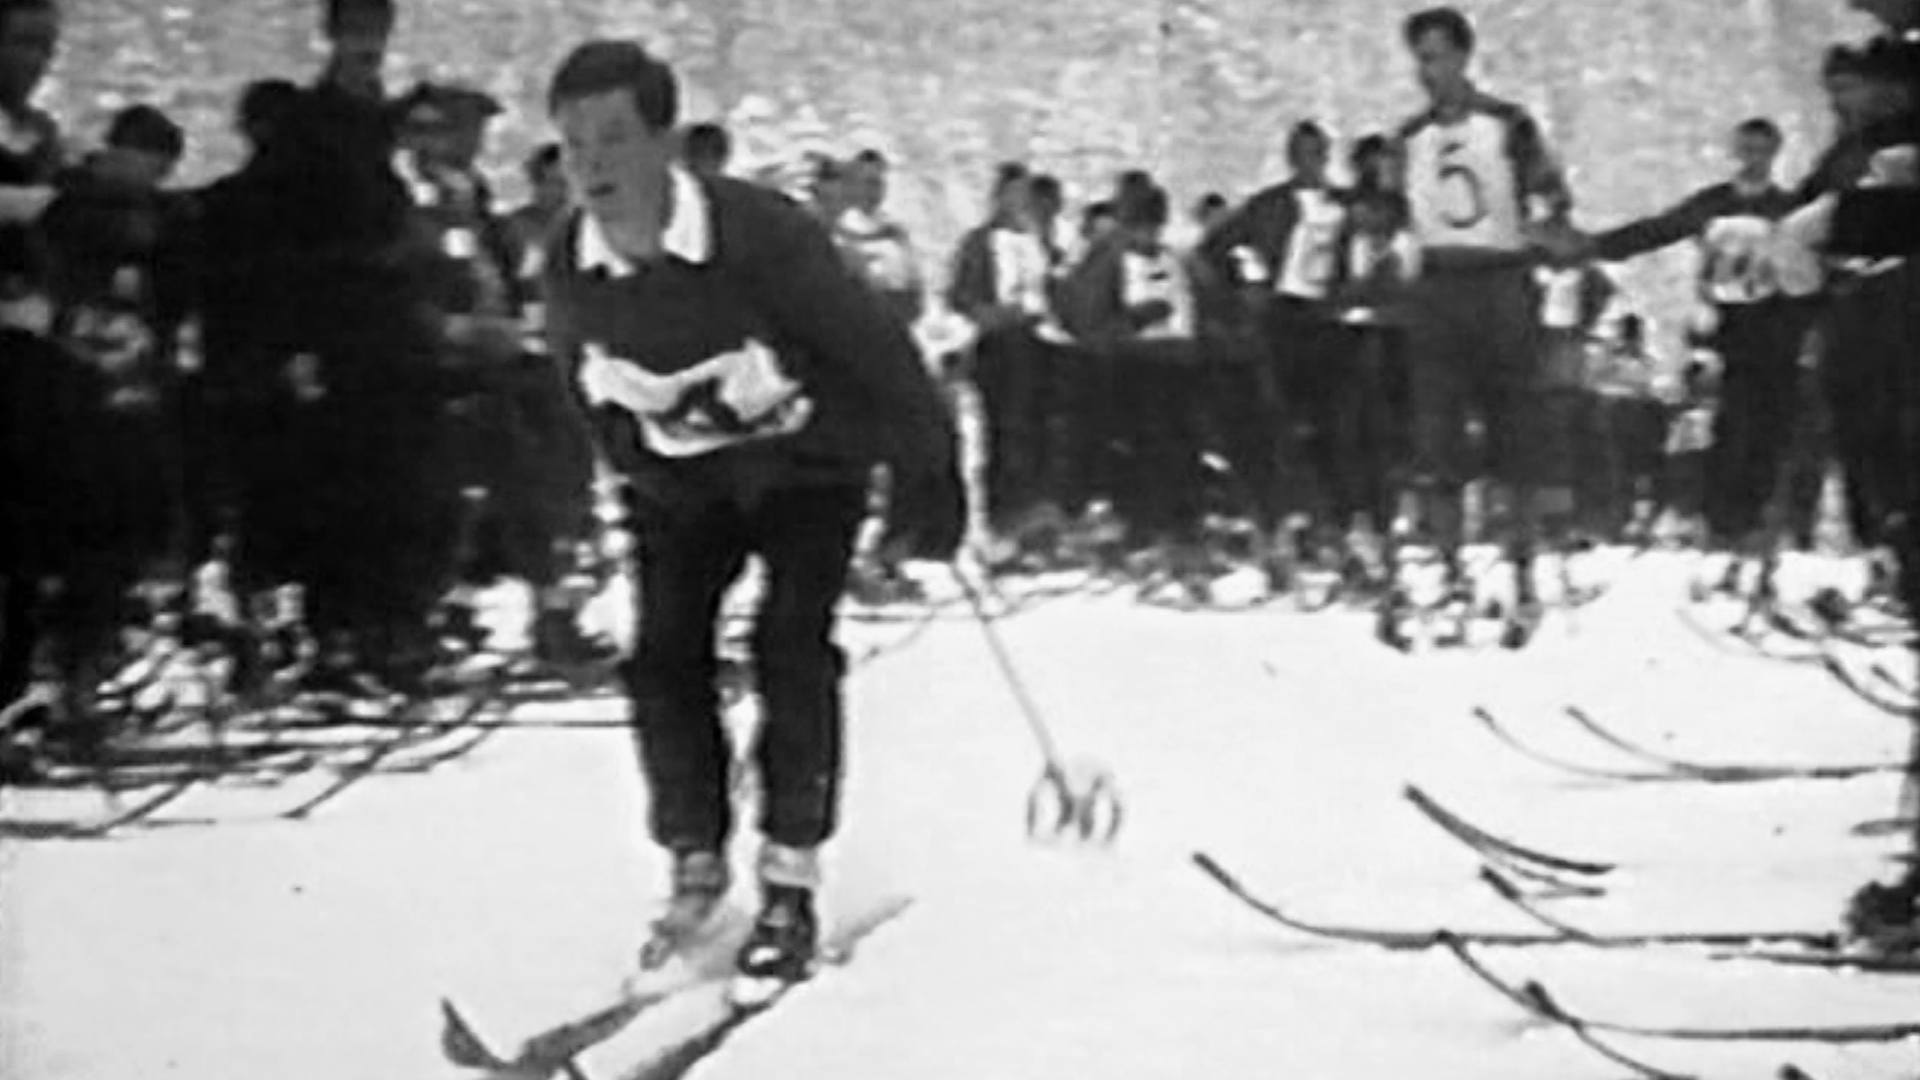 صورة بالألبيض والأسود لمسابقة في التزلج على الجليد في ثلاثينيات القرن العشرين